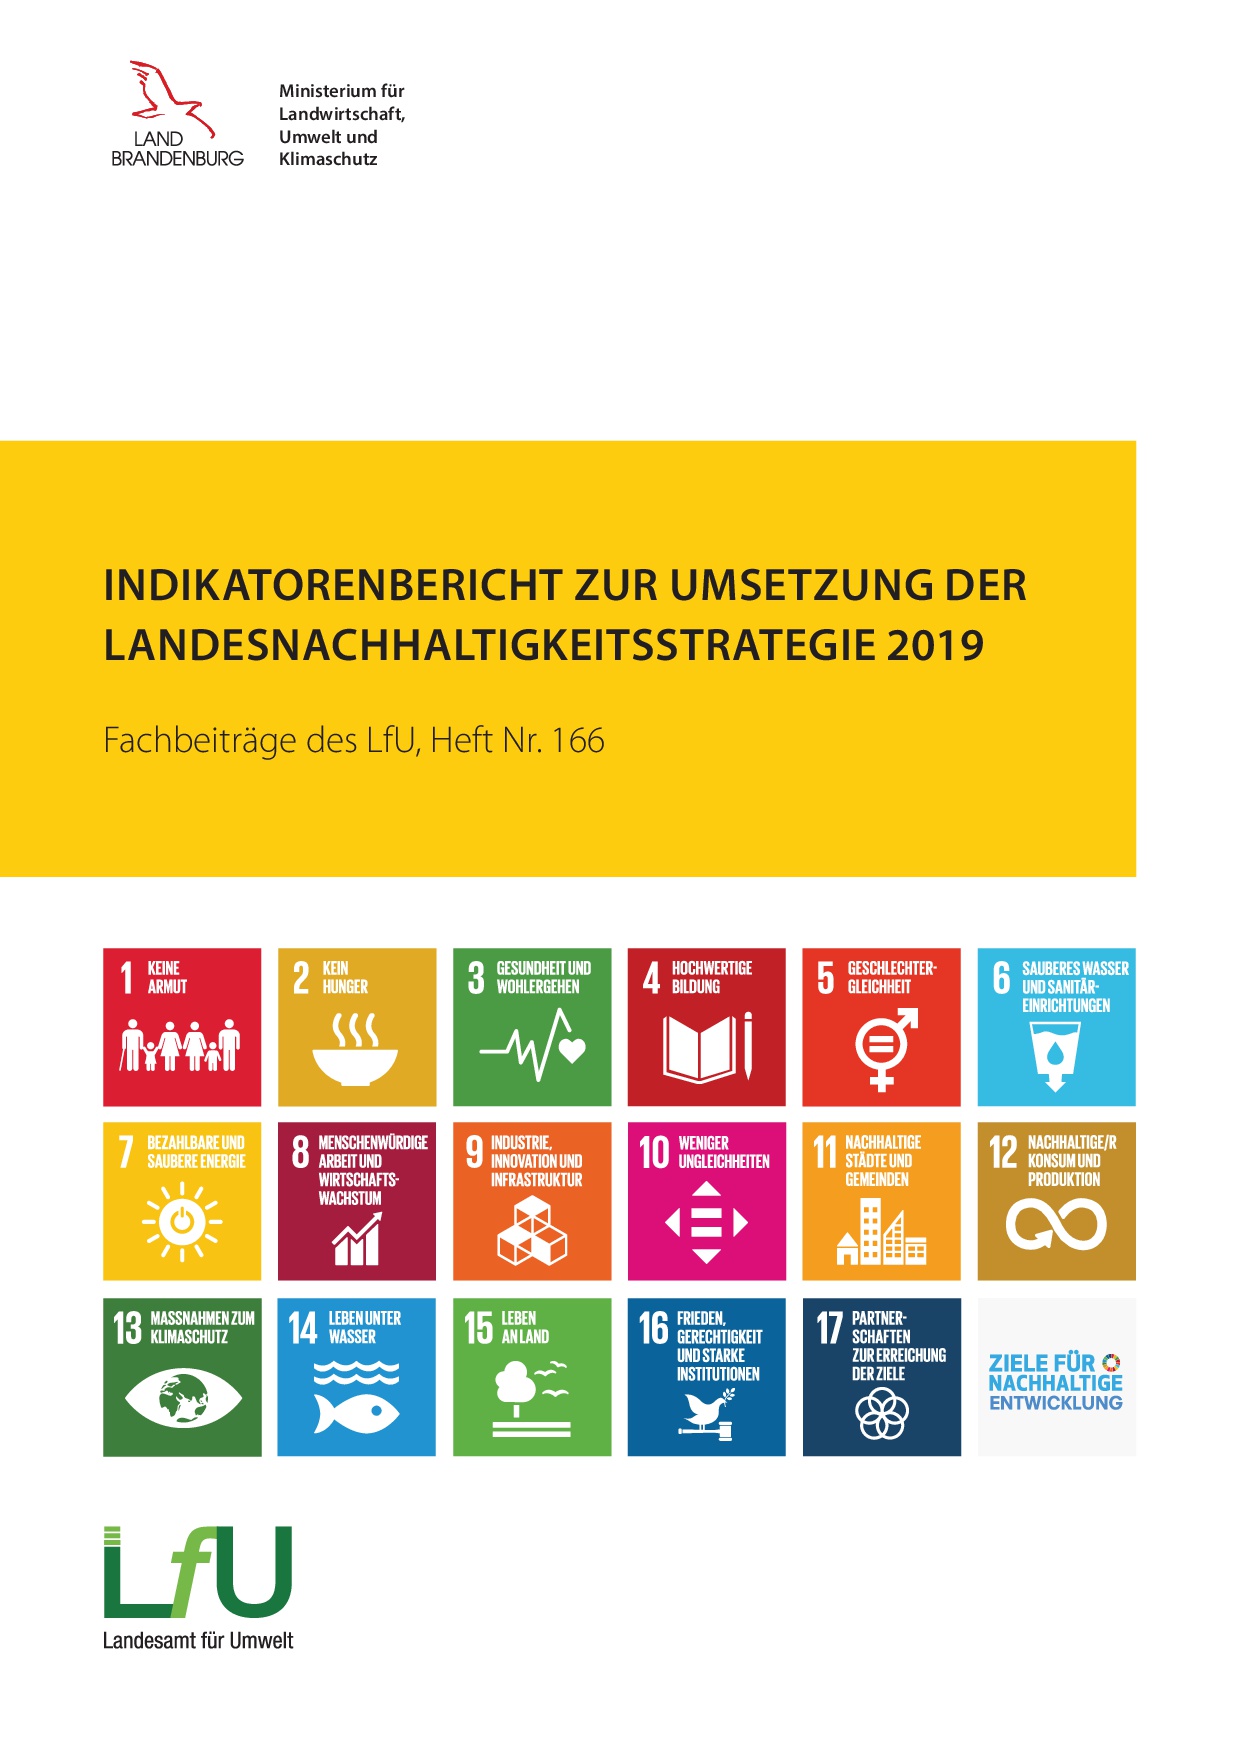 Bild vergrößern (Bild: Titelbild Indikatorenbericht zur Umsetzung der Landesnachhaltigkeitsstrategie 2019)